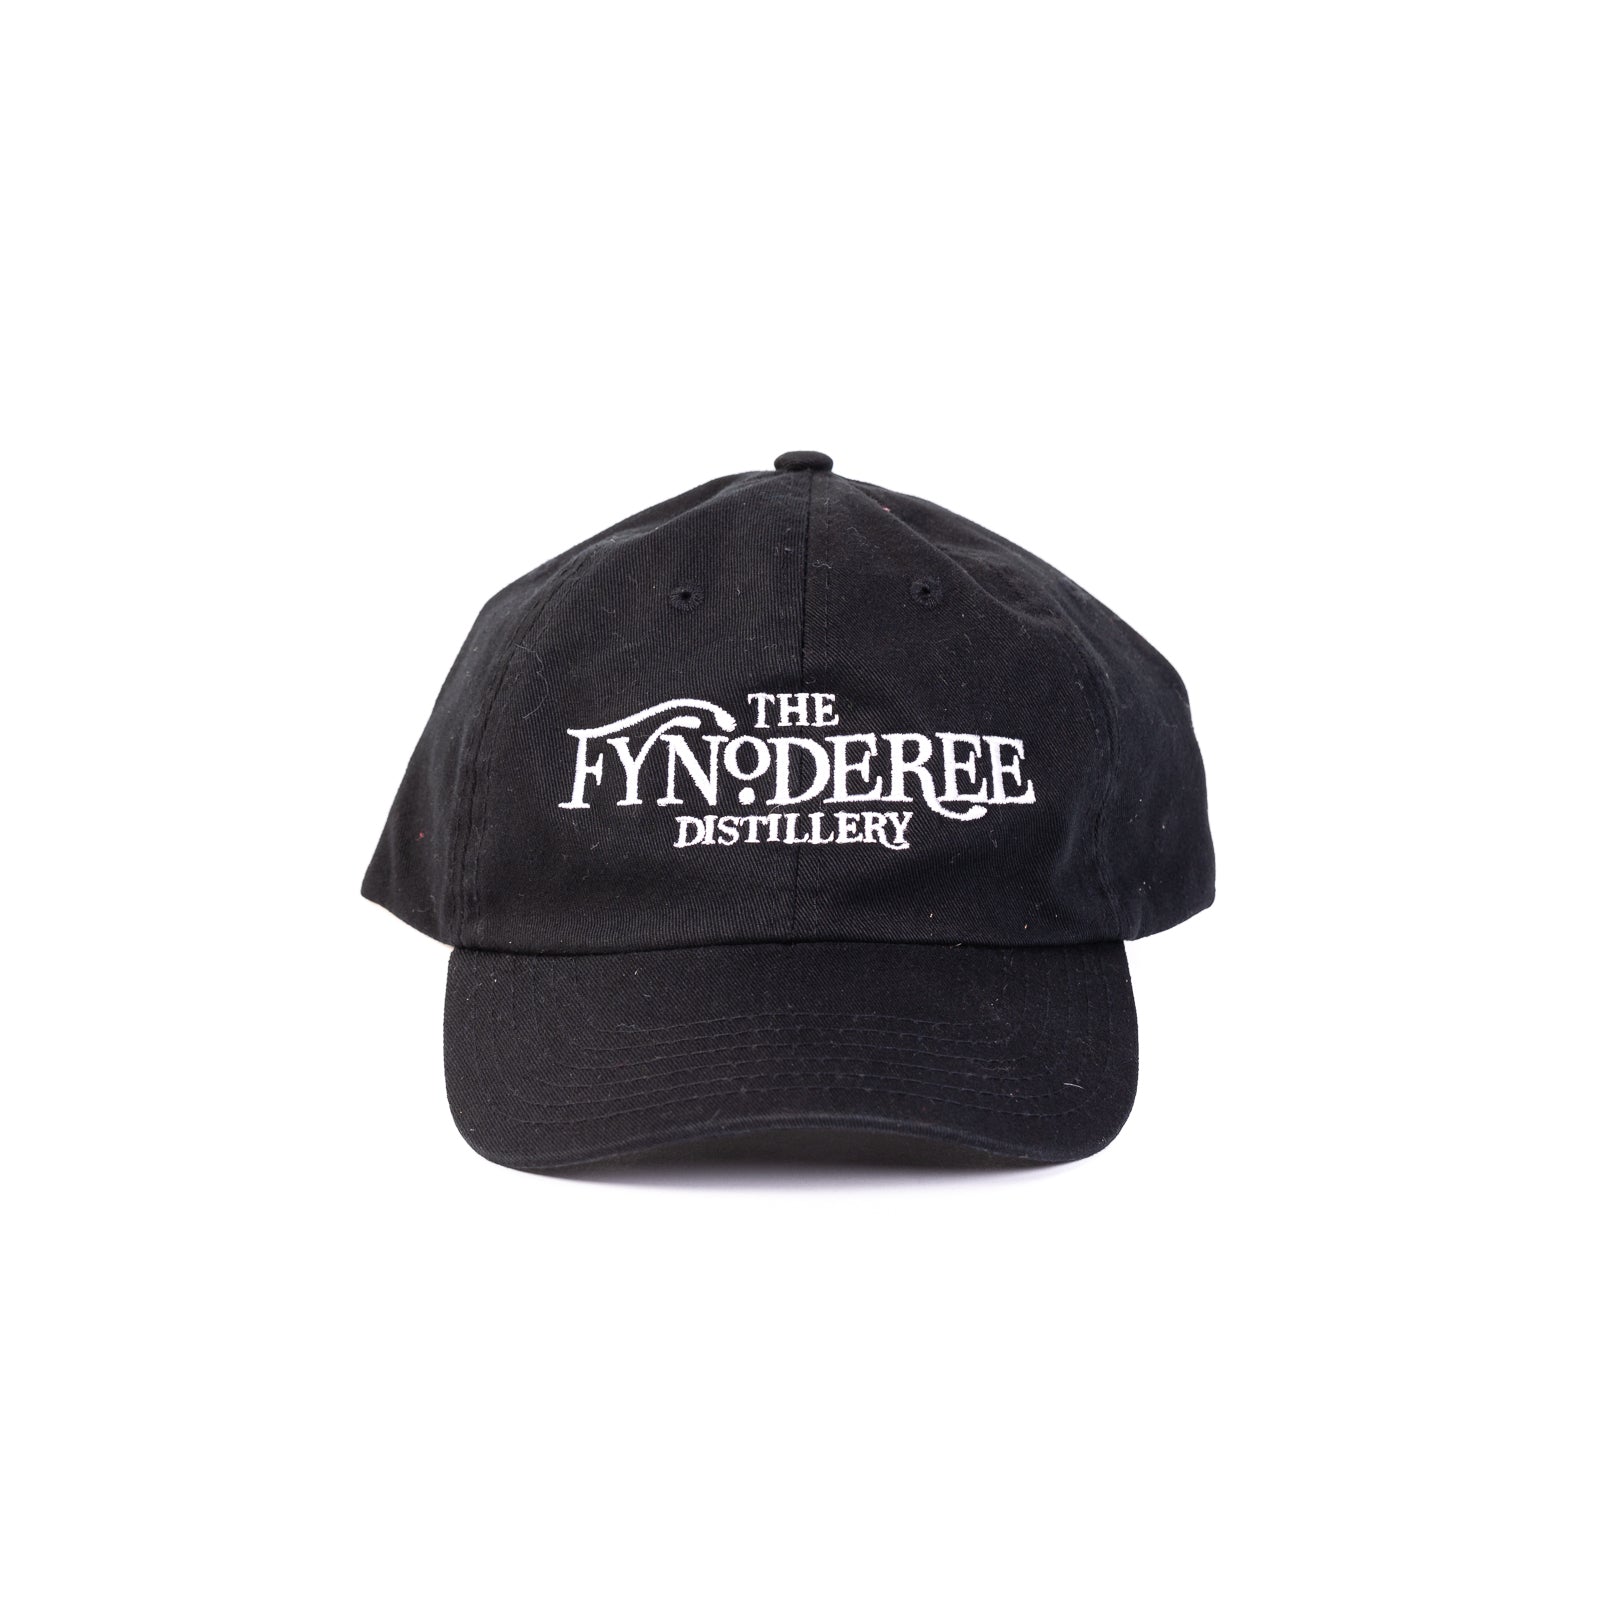 Fynoderee Distillery Baseball Cap